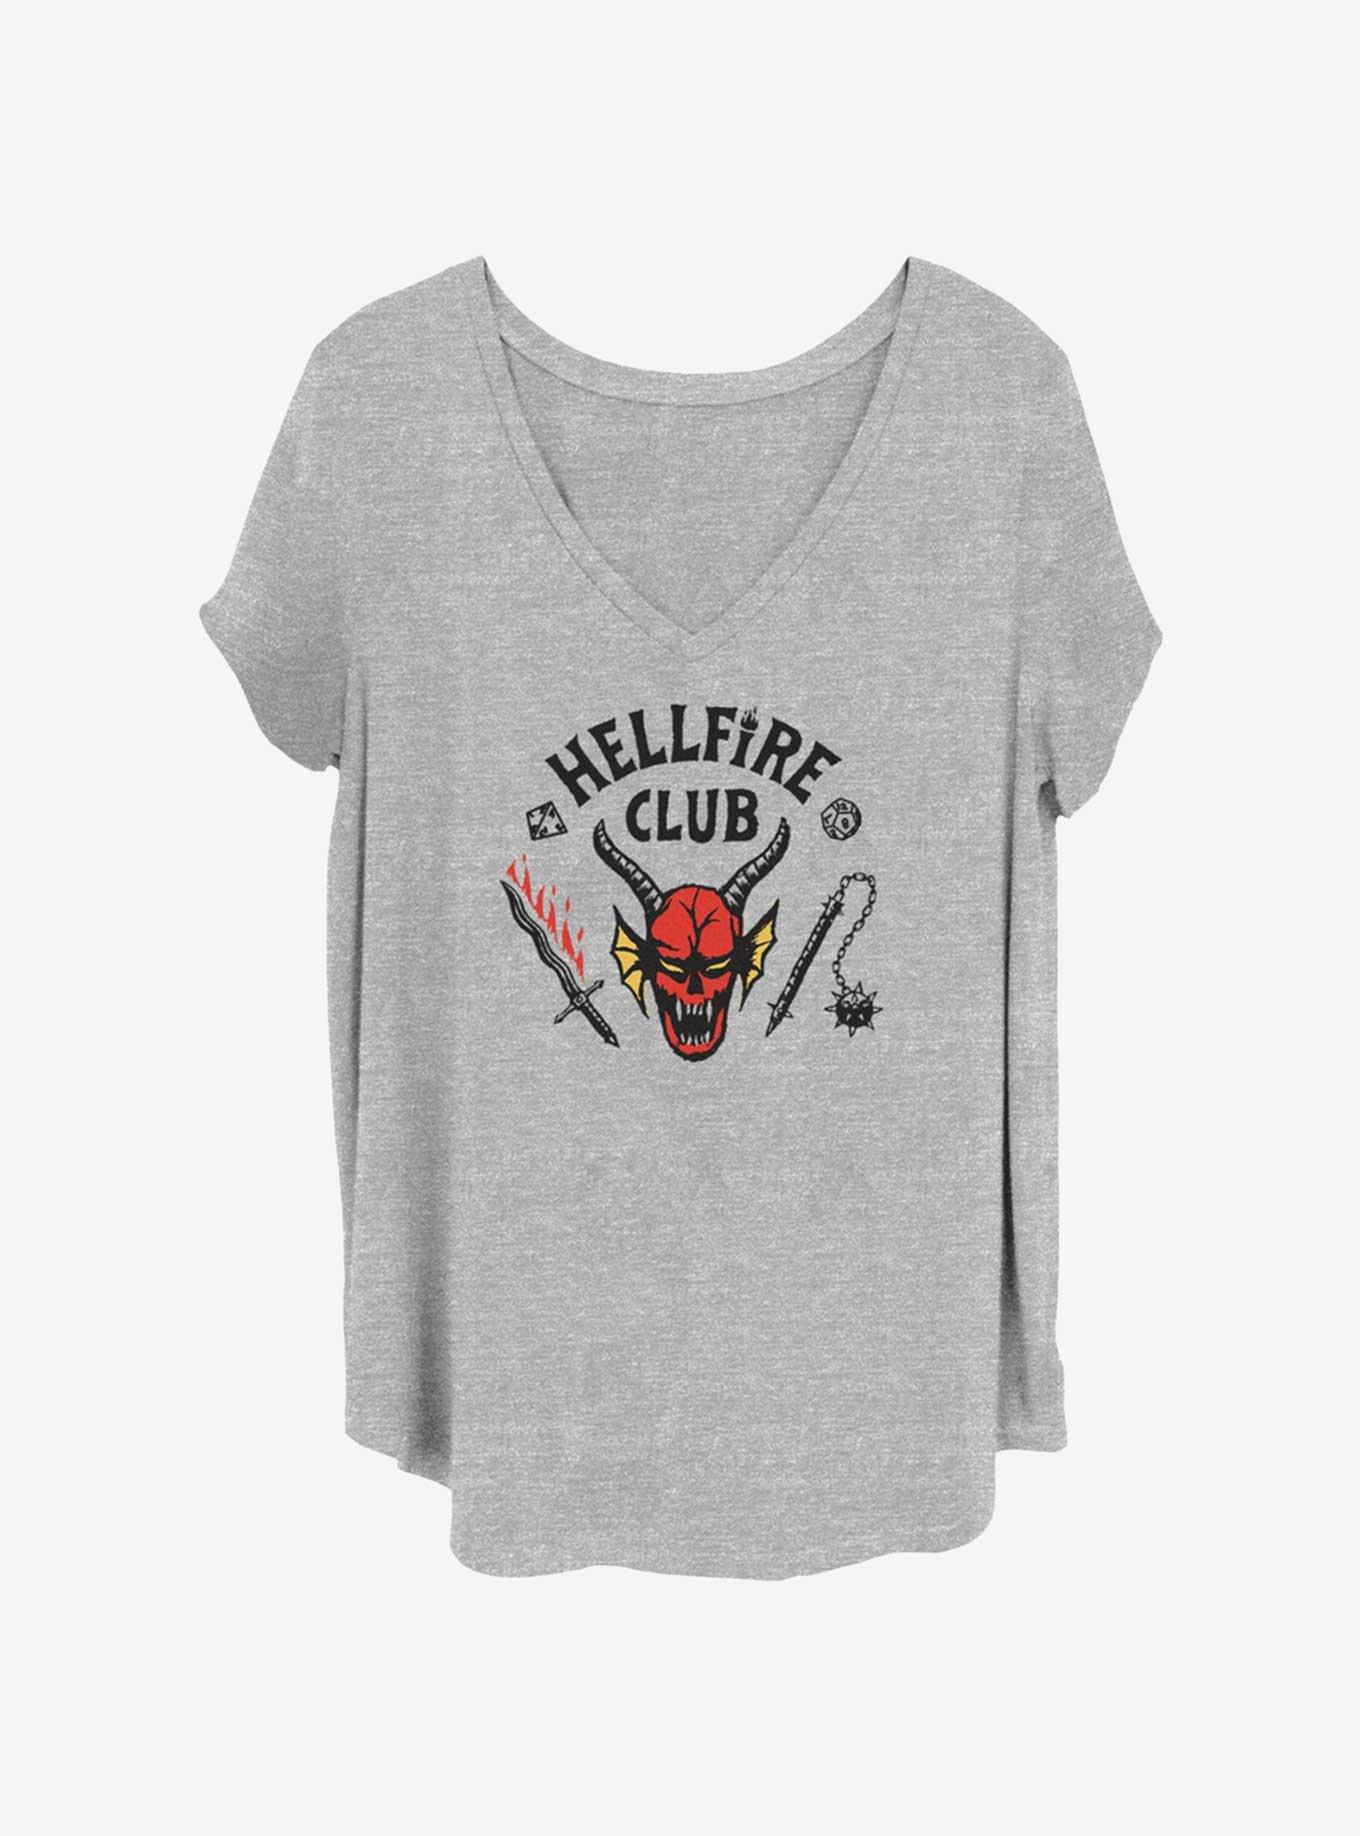 Stranger Things - Hellfire Club Girly Tee - Shirtstore